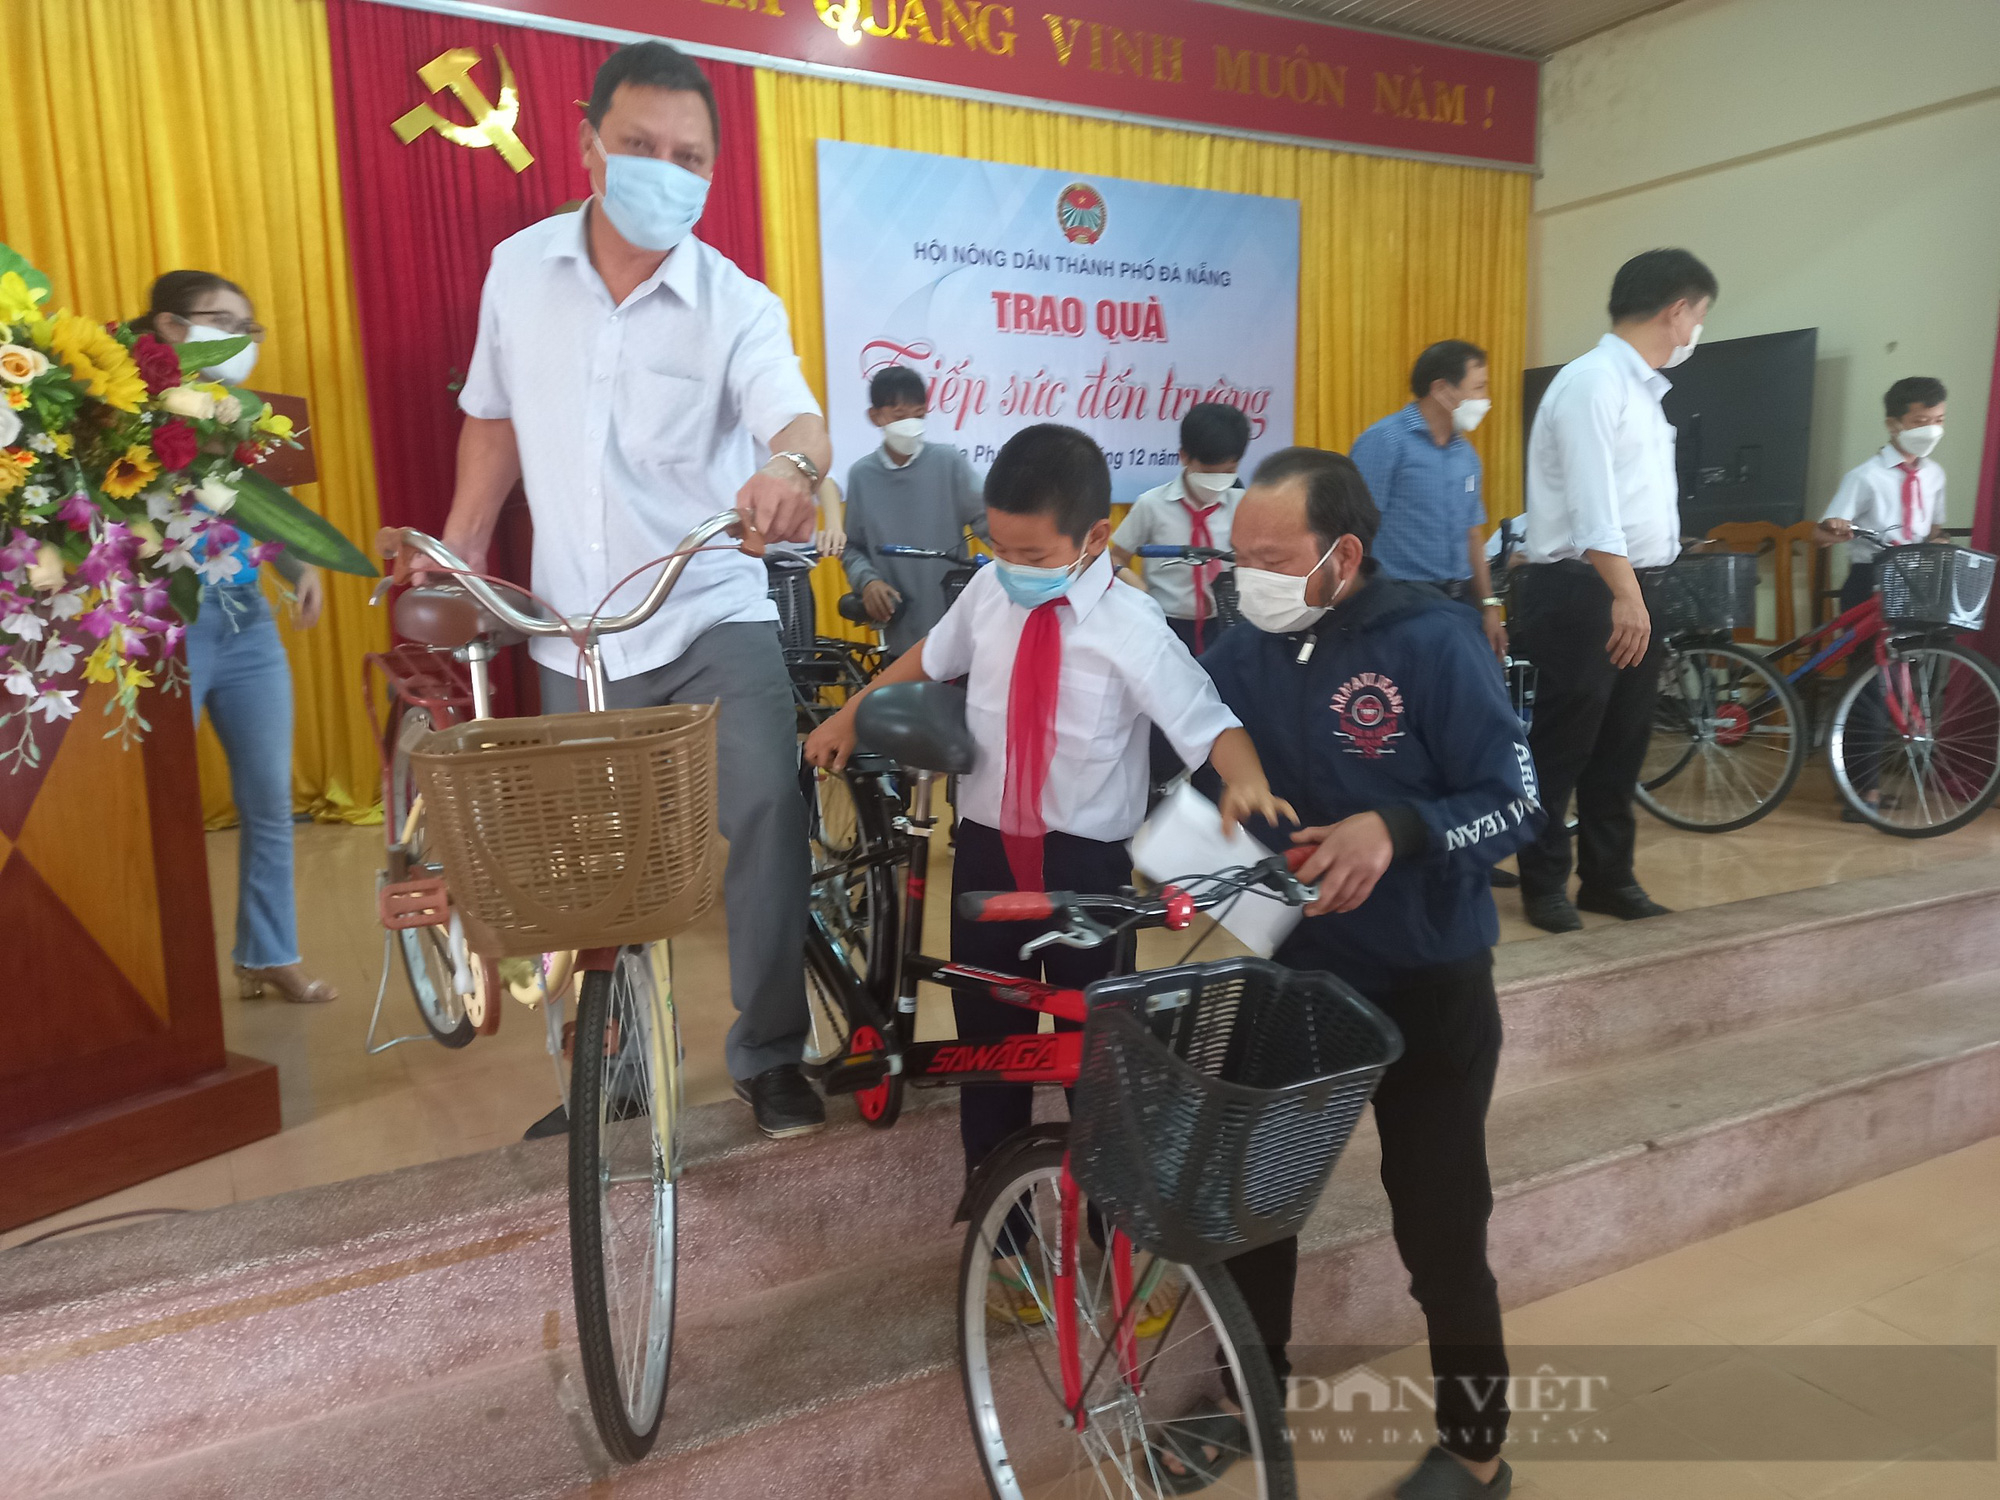 Hội Nông dân Đà Nẵng tiếp sức đến trường cho các em học sinh nghèo hiếu học - Ảnh 3.